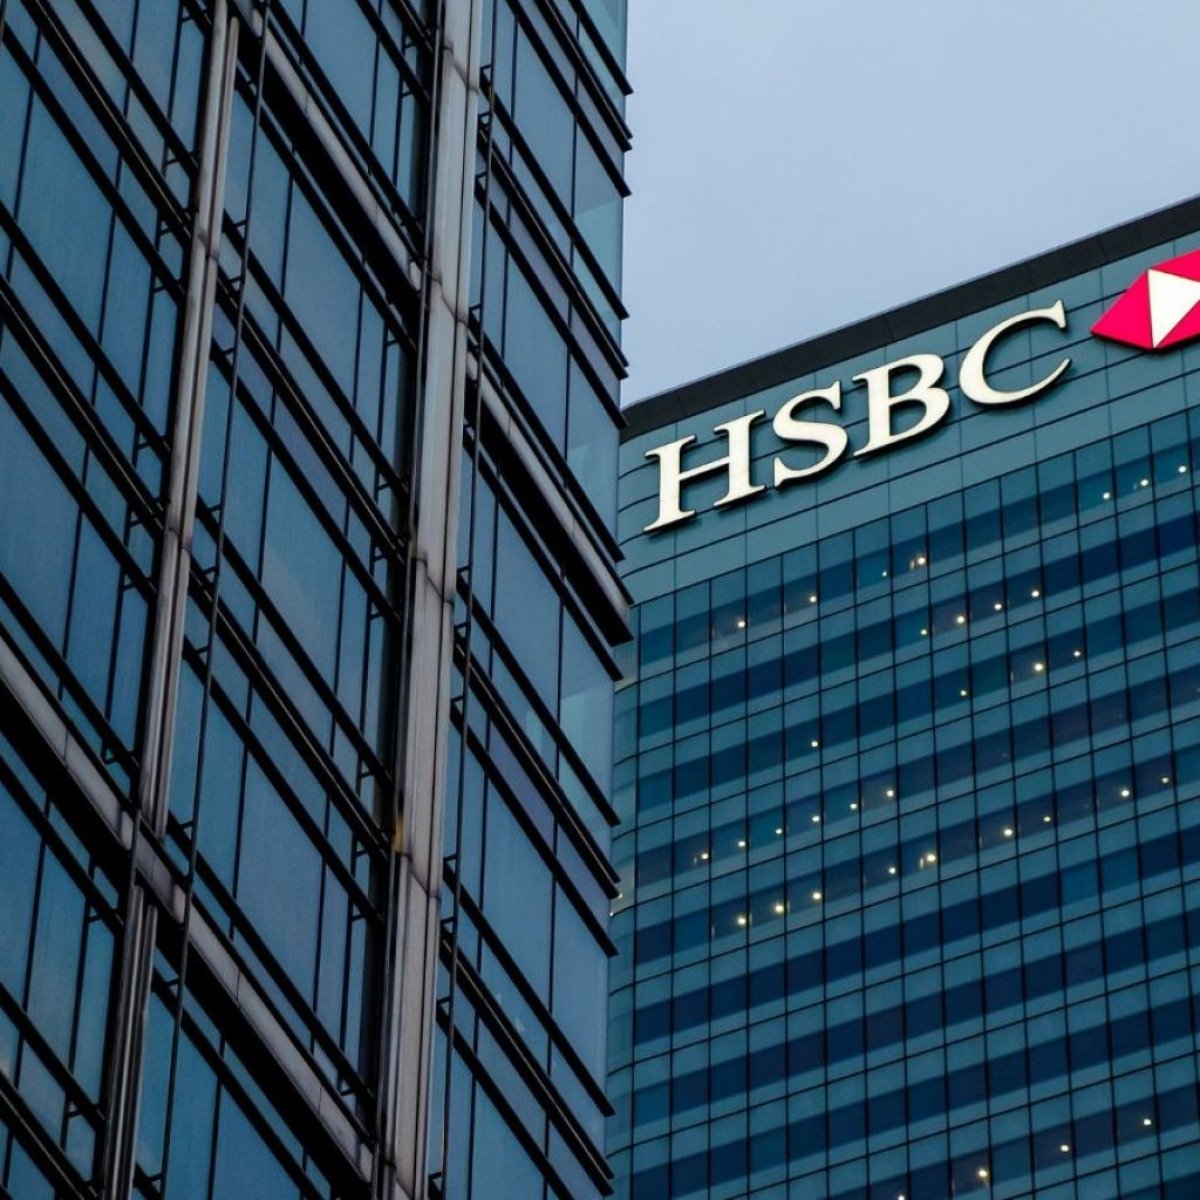 بنك HSBC مصر يطلق القرض الشخصي الأخضر للأفراد